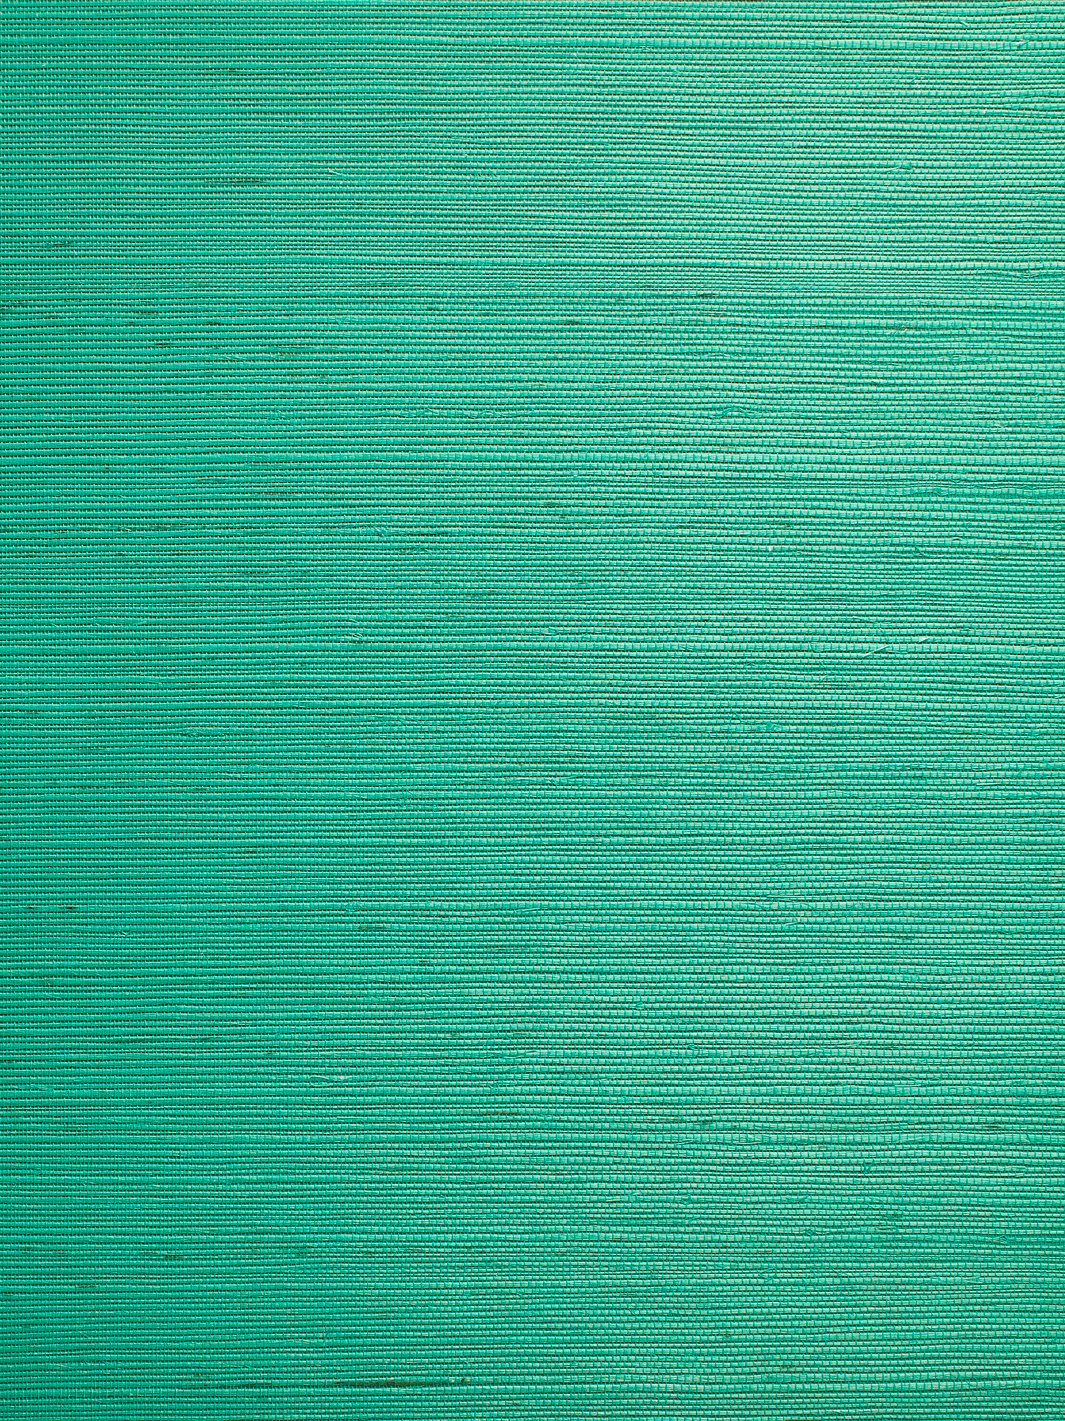 'Solid Grasscloth' Wallpaper by Wallshoppe - Green